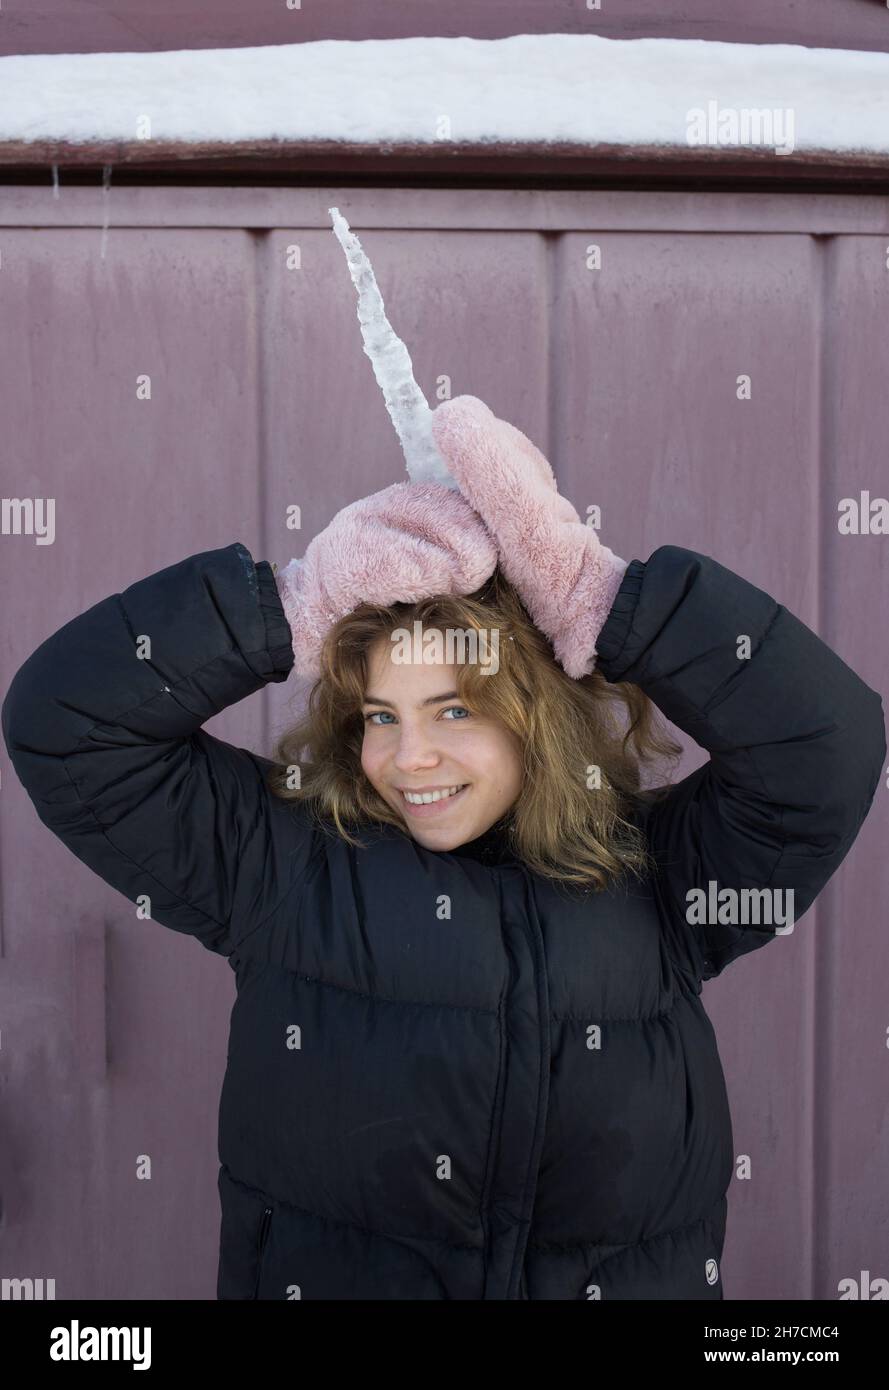 Porträt eines niedlichen Teenagers von 16-17 Jahren, das mit einem großen durchsichtigen Eiszapfen spielt und es wie ein Einhorn am Kopf hält. Fröhlicher Wint Stockfoto